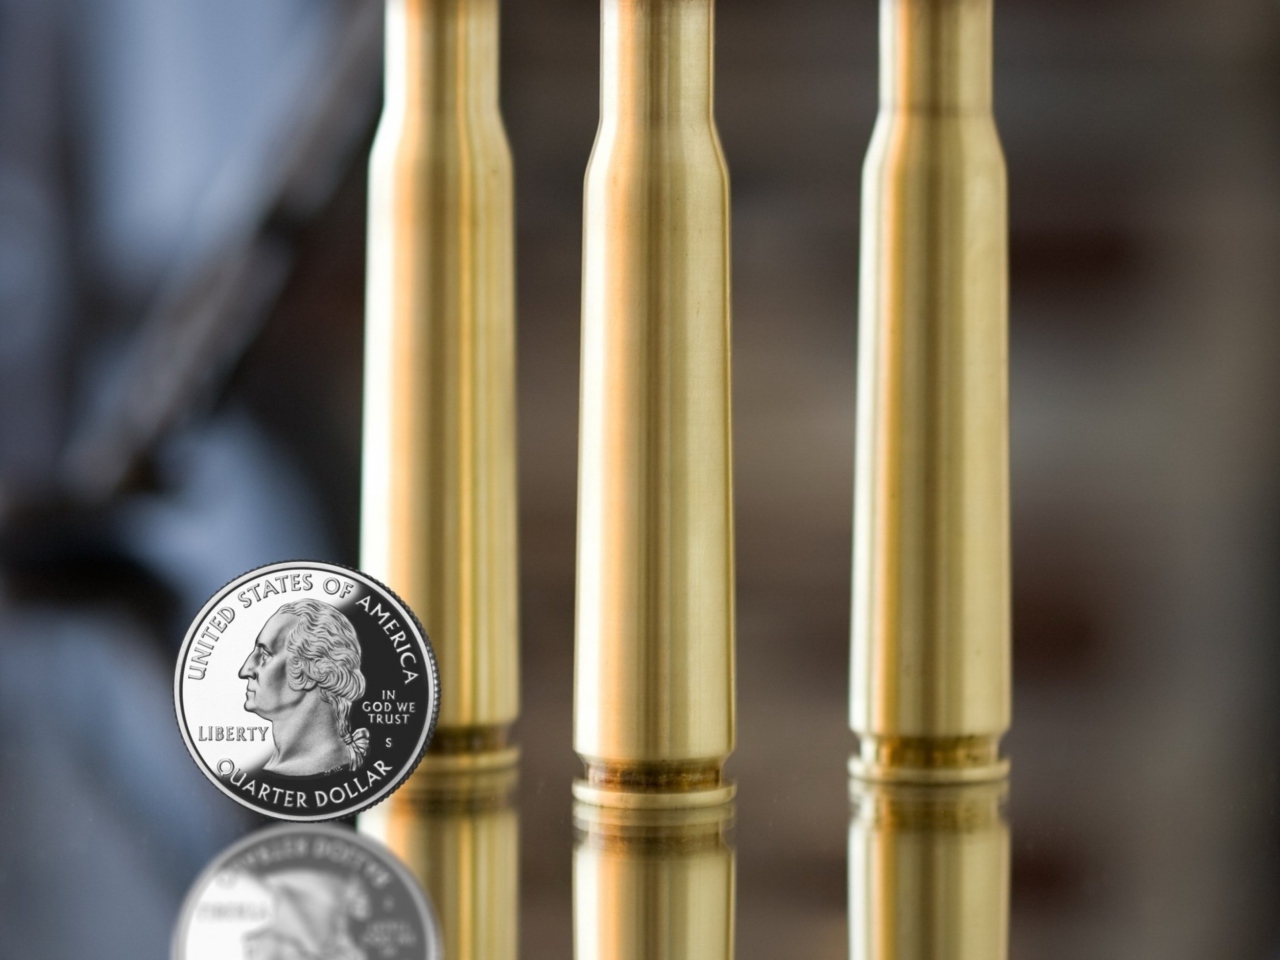 Sfondi Bullets And Quarter Dollar 1280x960